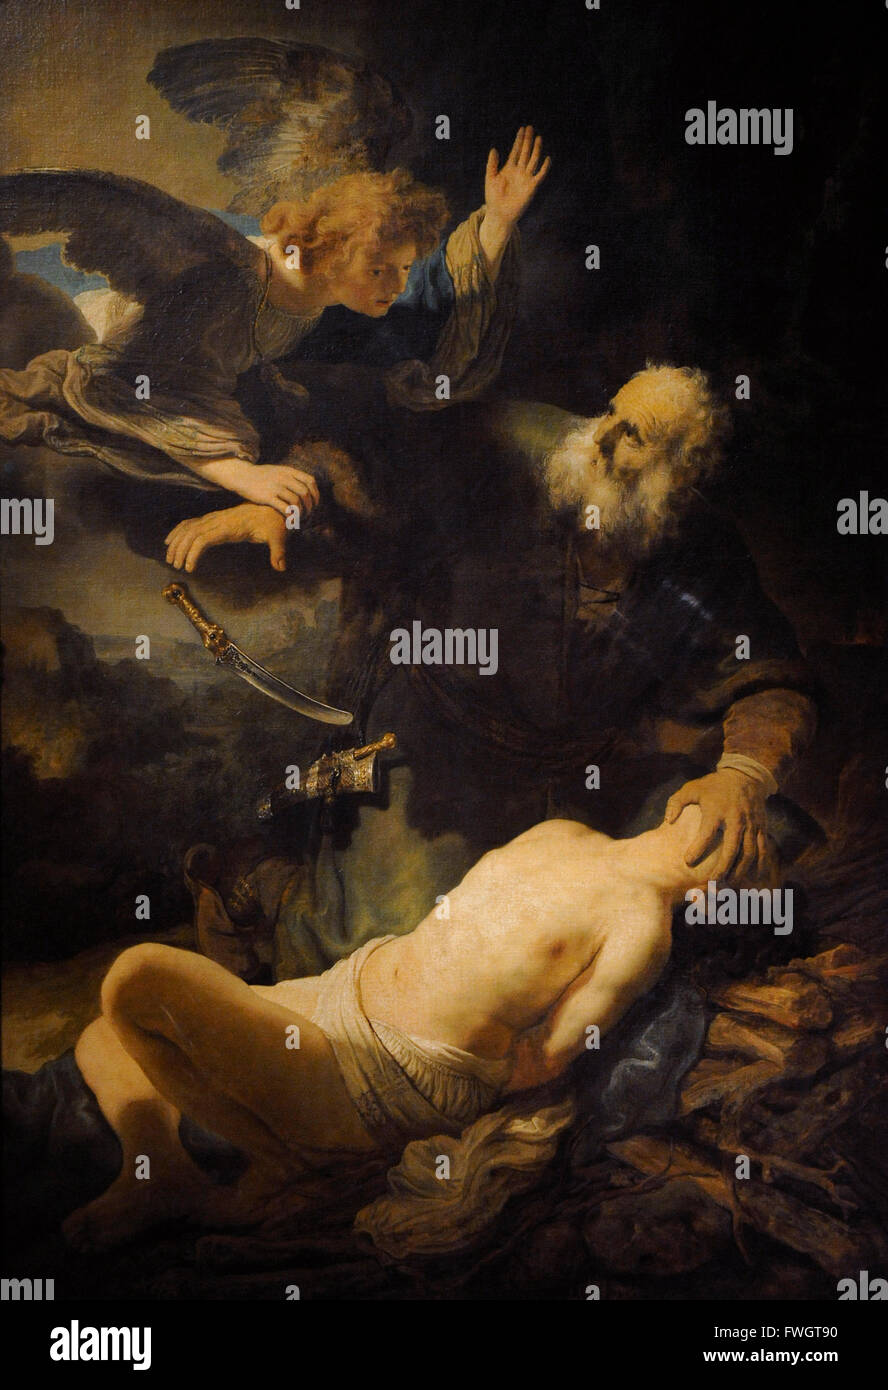 Rembrandt Harmenszoon van Rijn (1606-1669). Peintre hollandais. Sacrifice d'Isaac, 1635. Huile sur toile. Le Musée de l'Ermitage. Saint Petersburg. La Russie. Banque D'Images